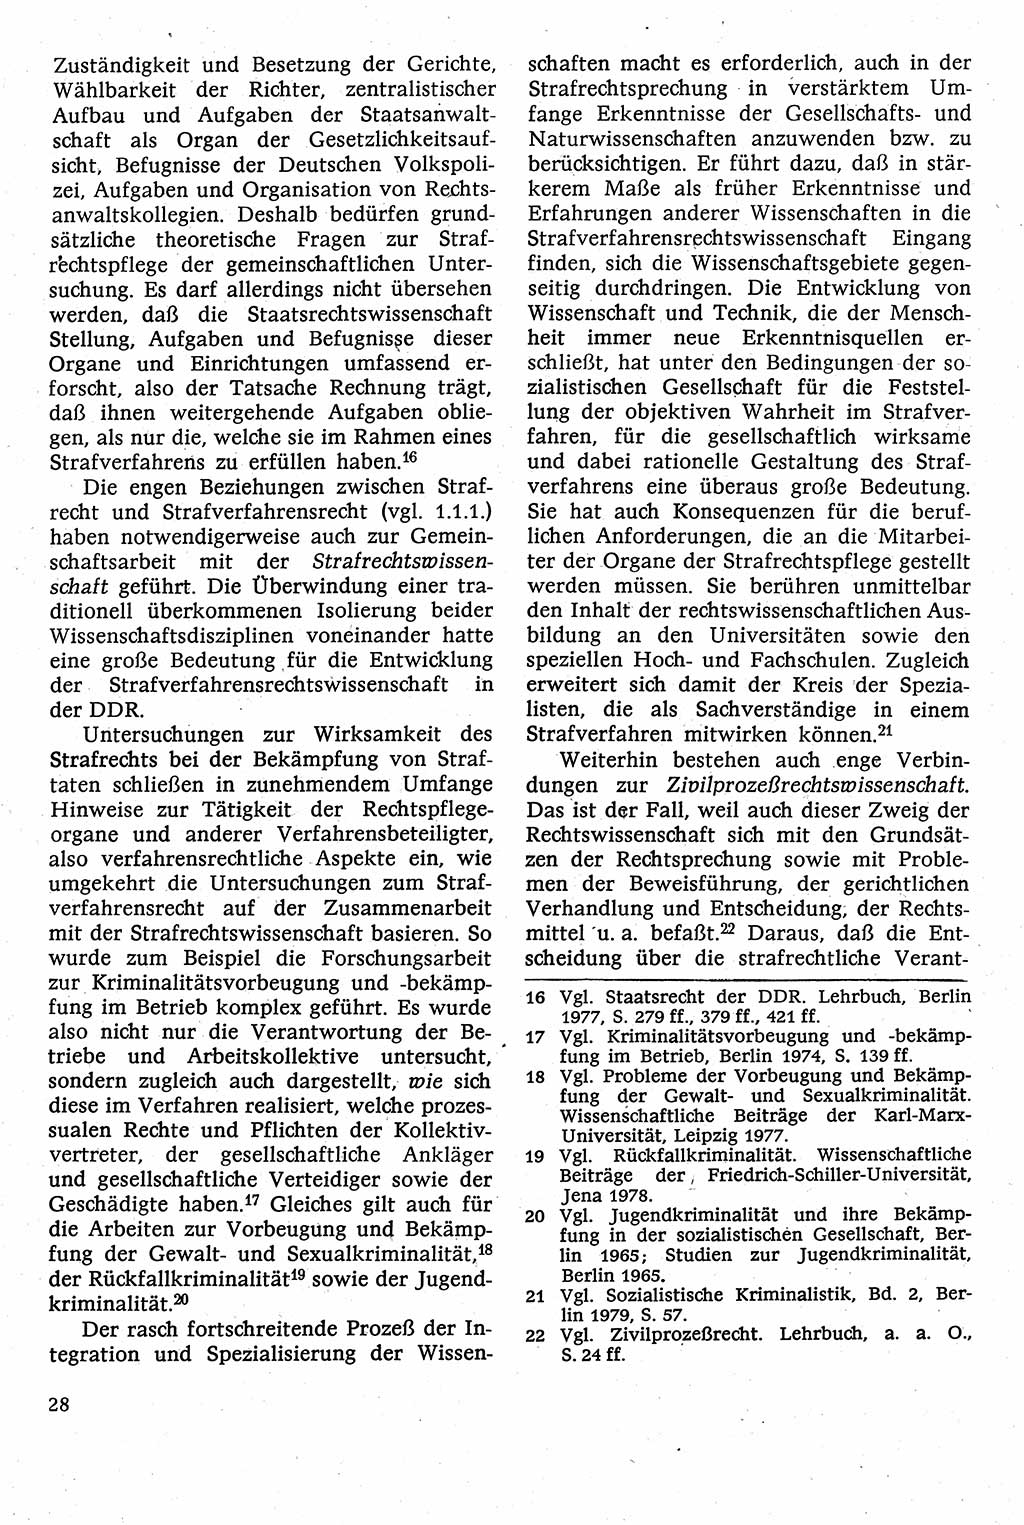 Strafverfahrensrecht [Deutsche Demokratische Republik (DDR)], Lehrbuch 1982, Seite 28 (Strafverf.-R. DDR Lb. 1982, S. 28)